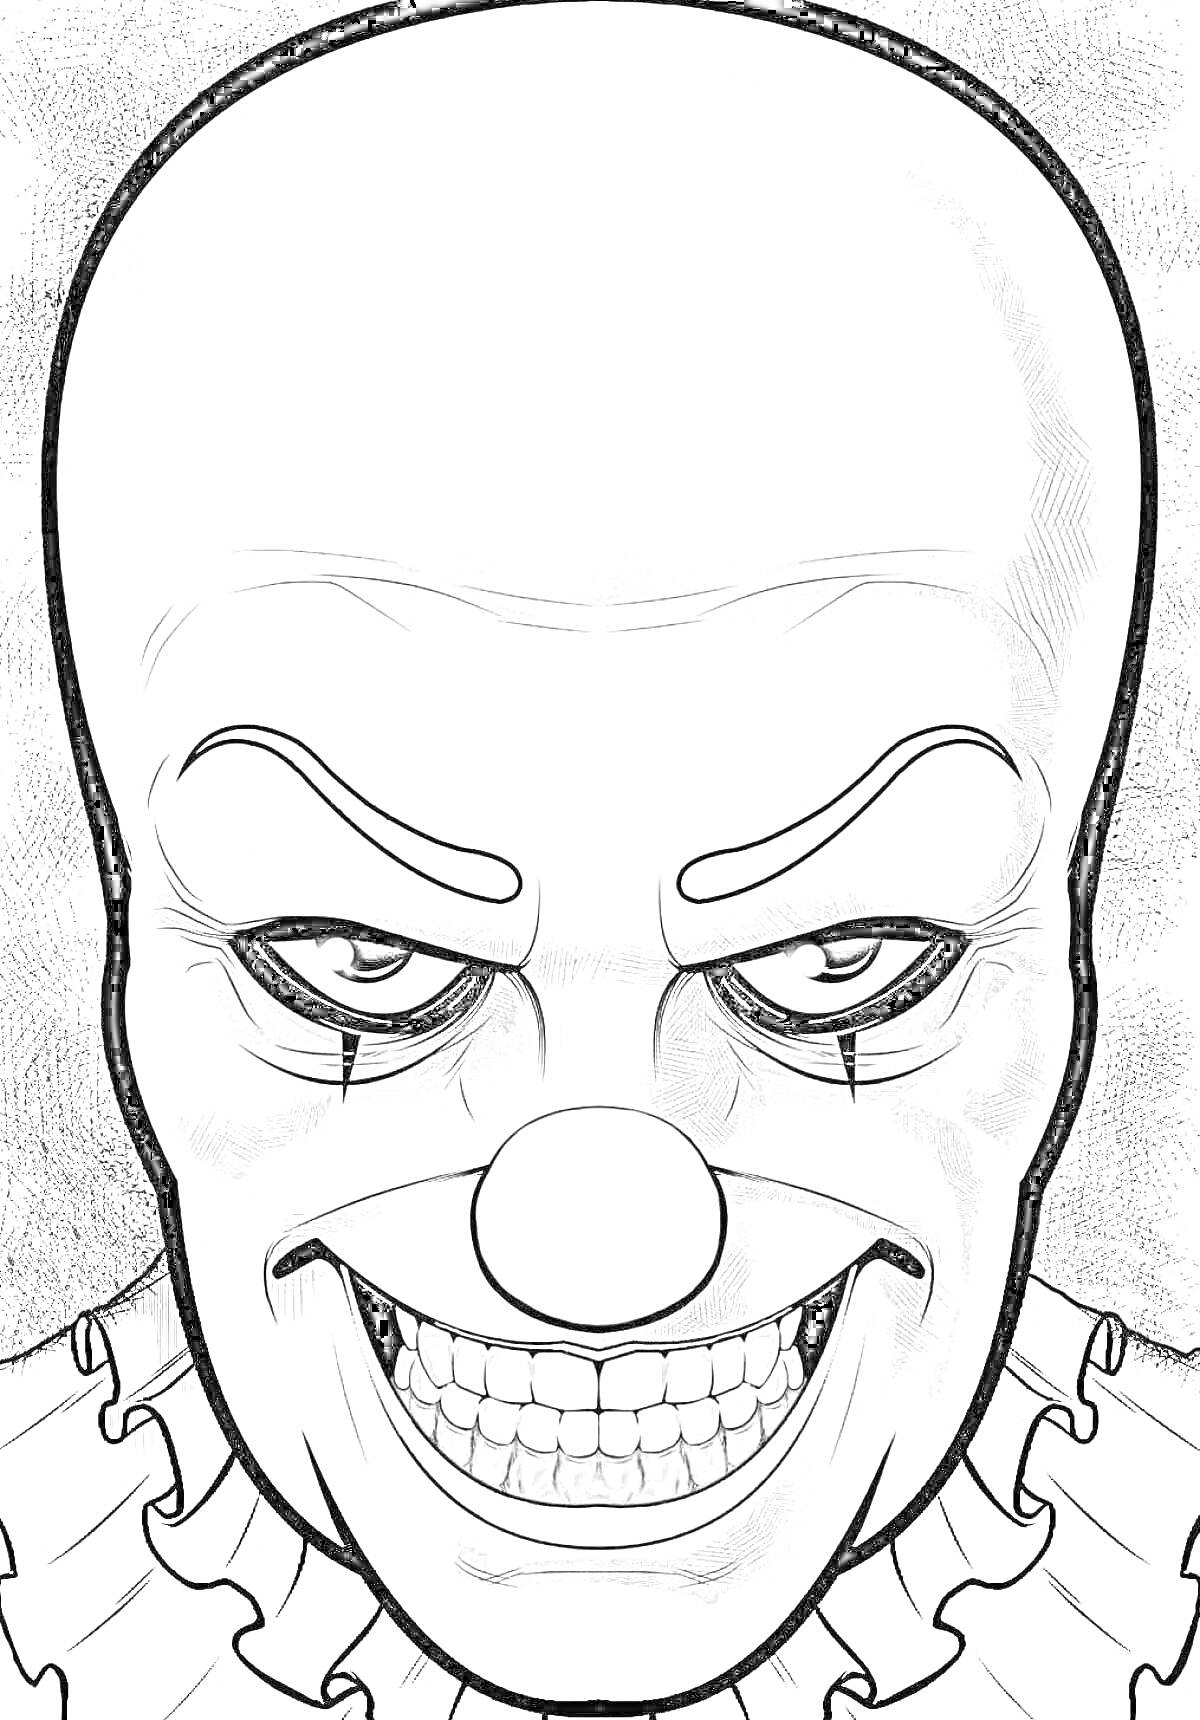 Злобный клоун с большой лысой головой, гримом и широким оскалом, в воротнике с оборками